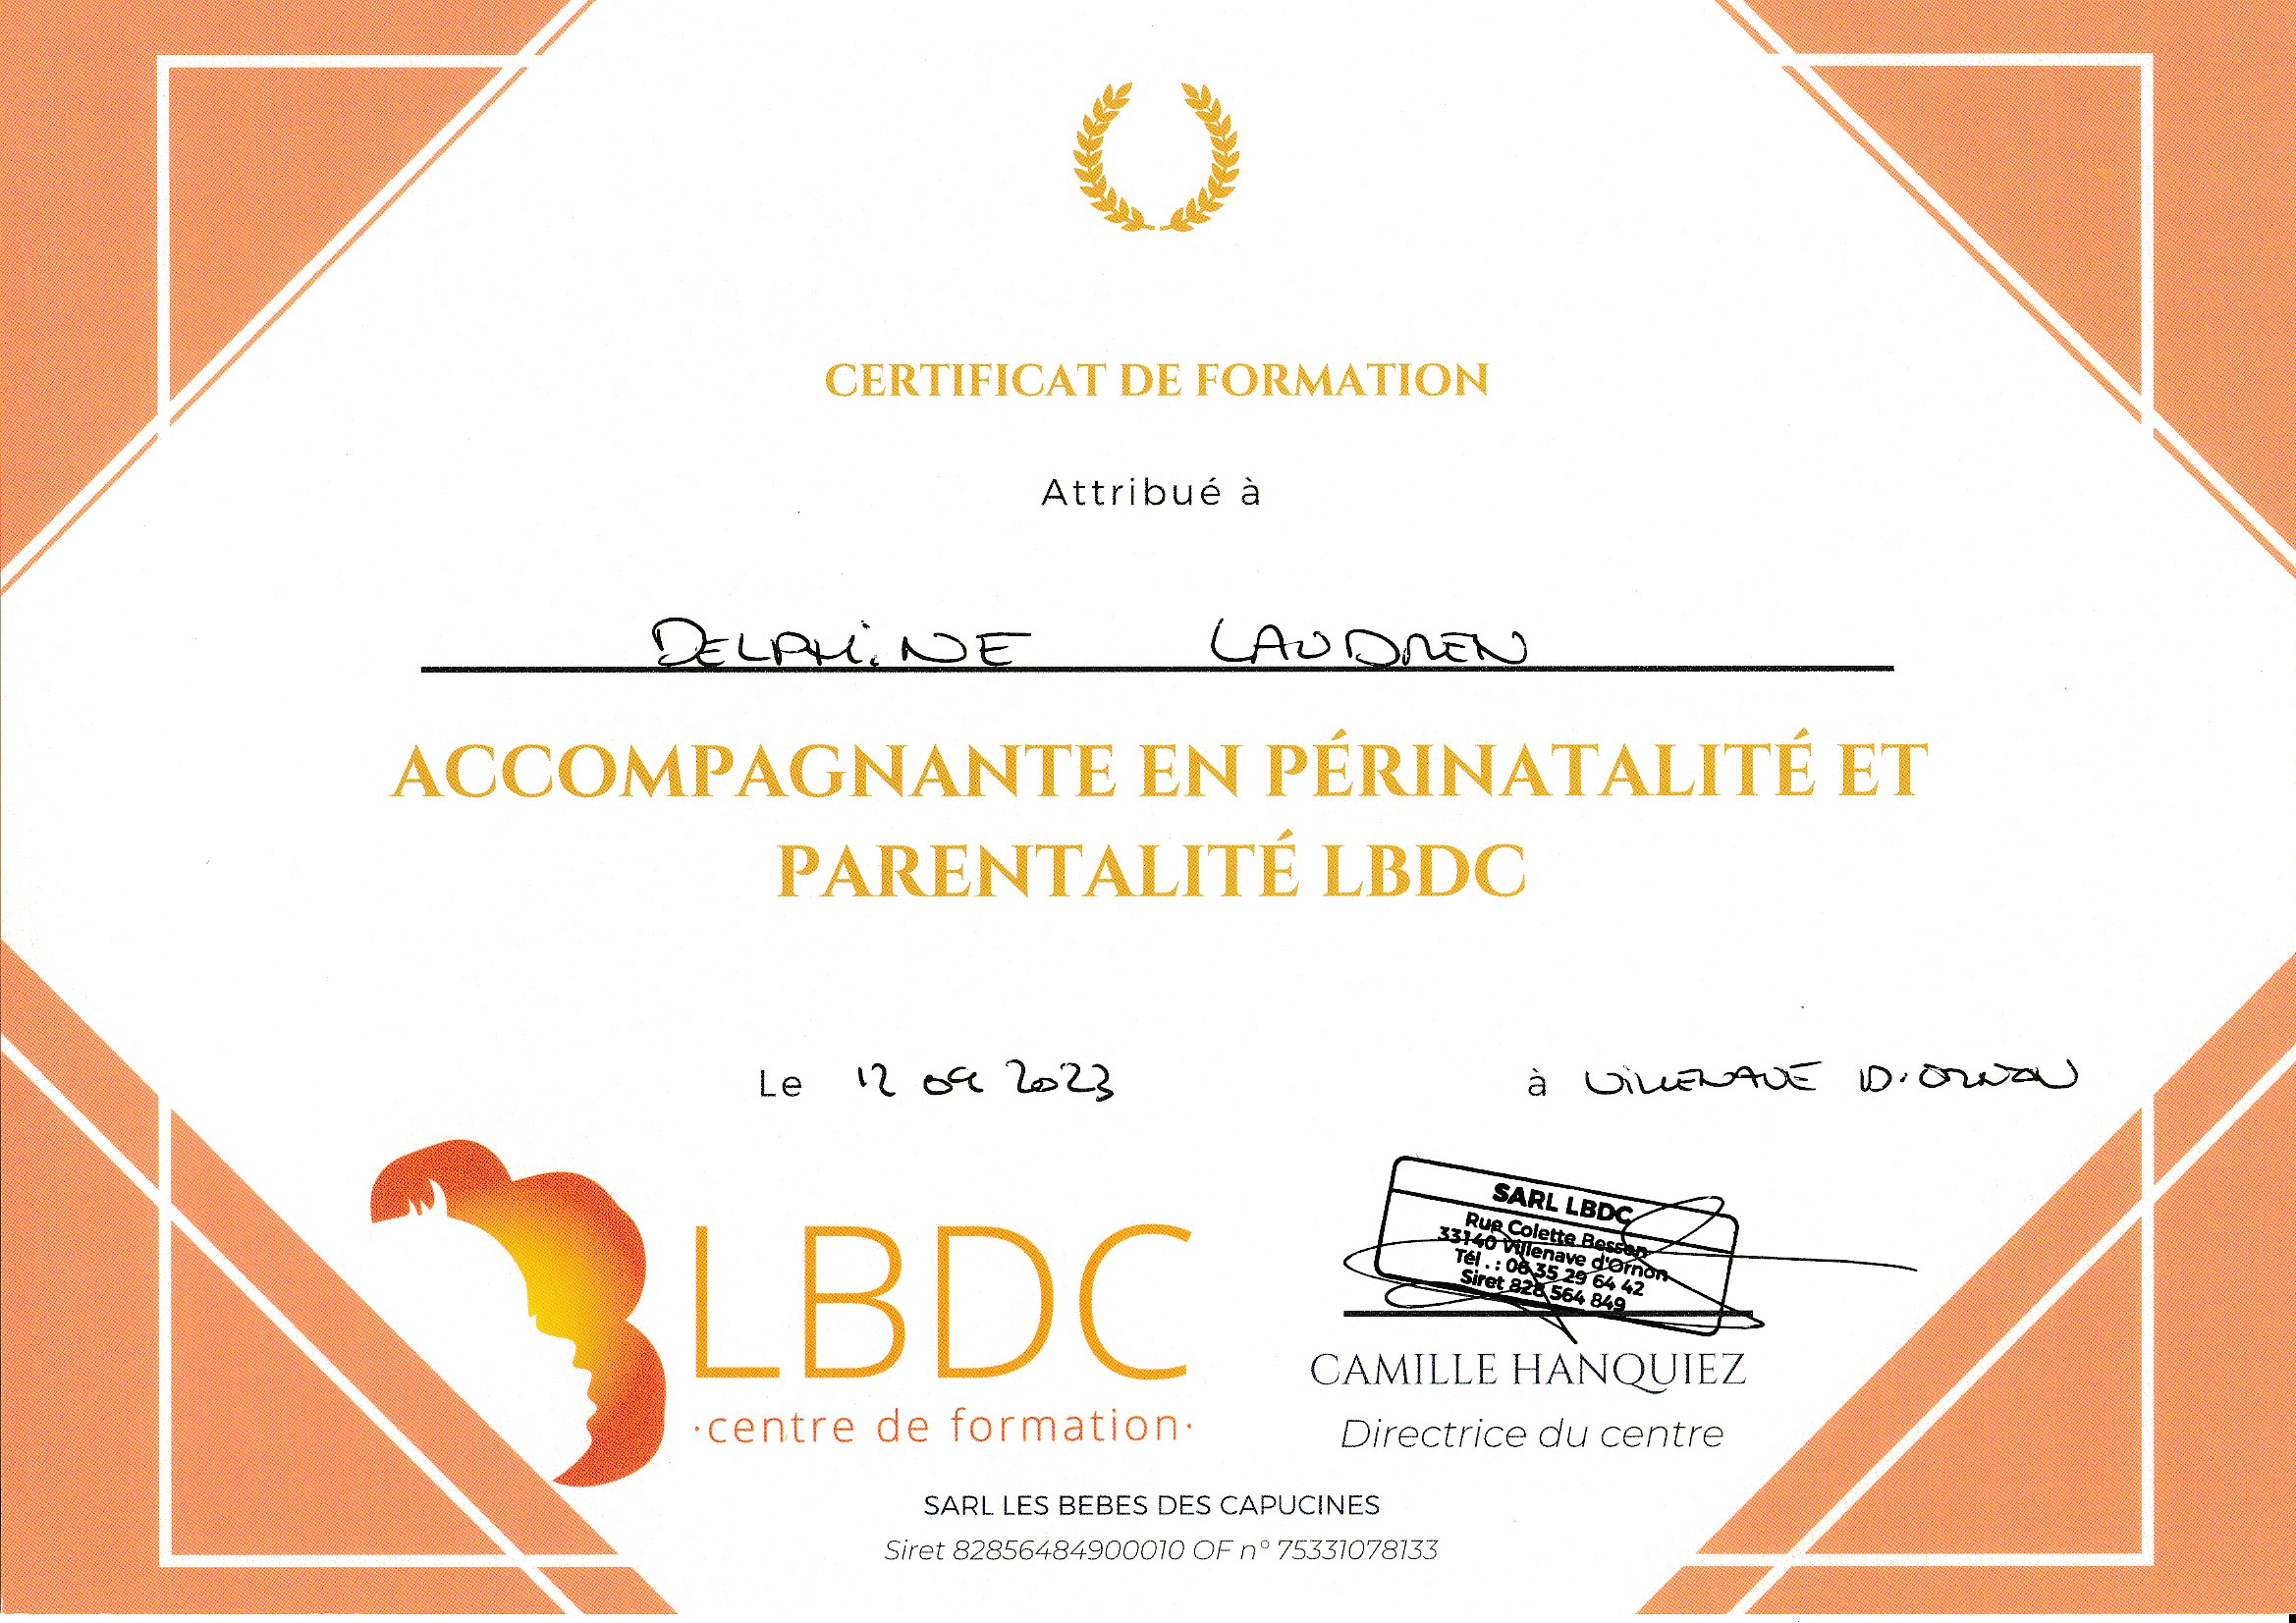 Première Accompagnante en Périnatalité et Parentalité LBDC en Indre-et-Loire